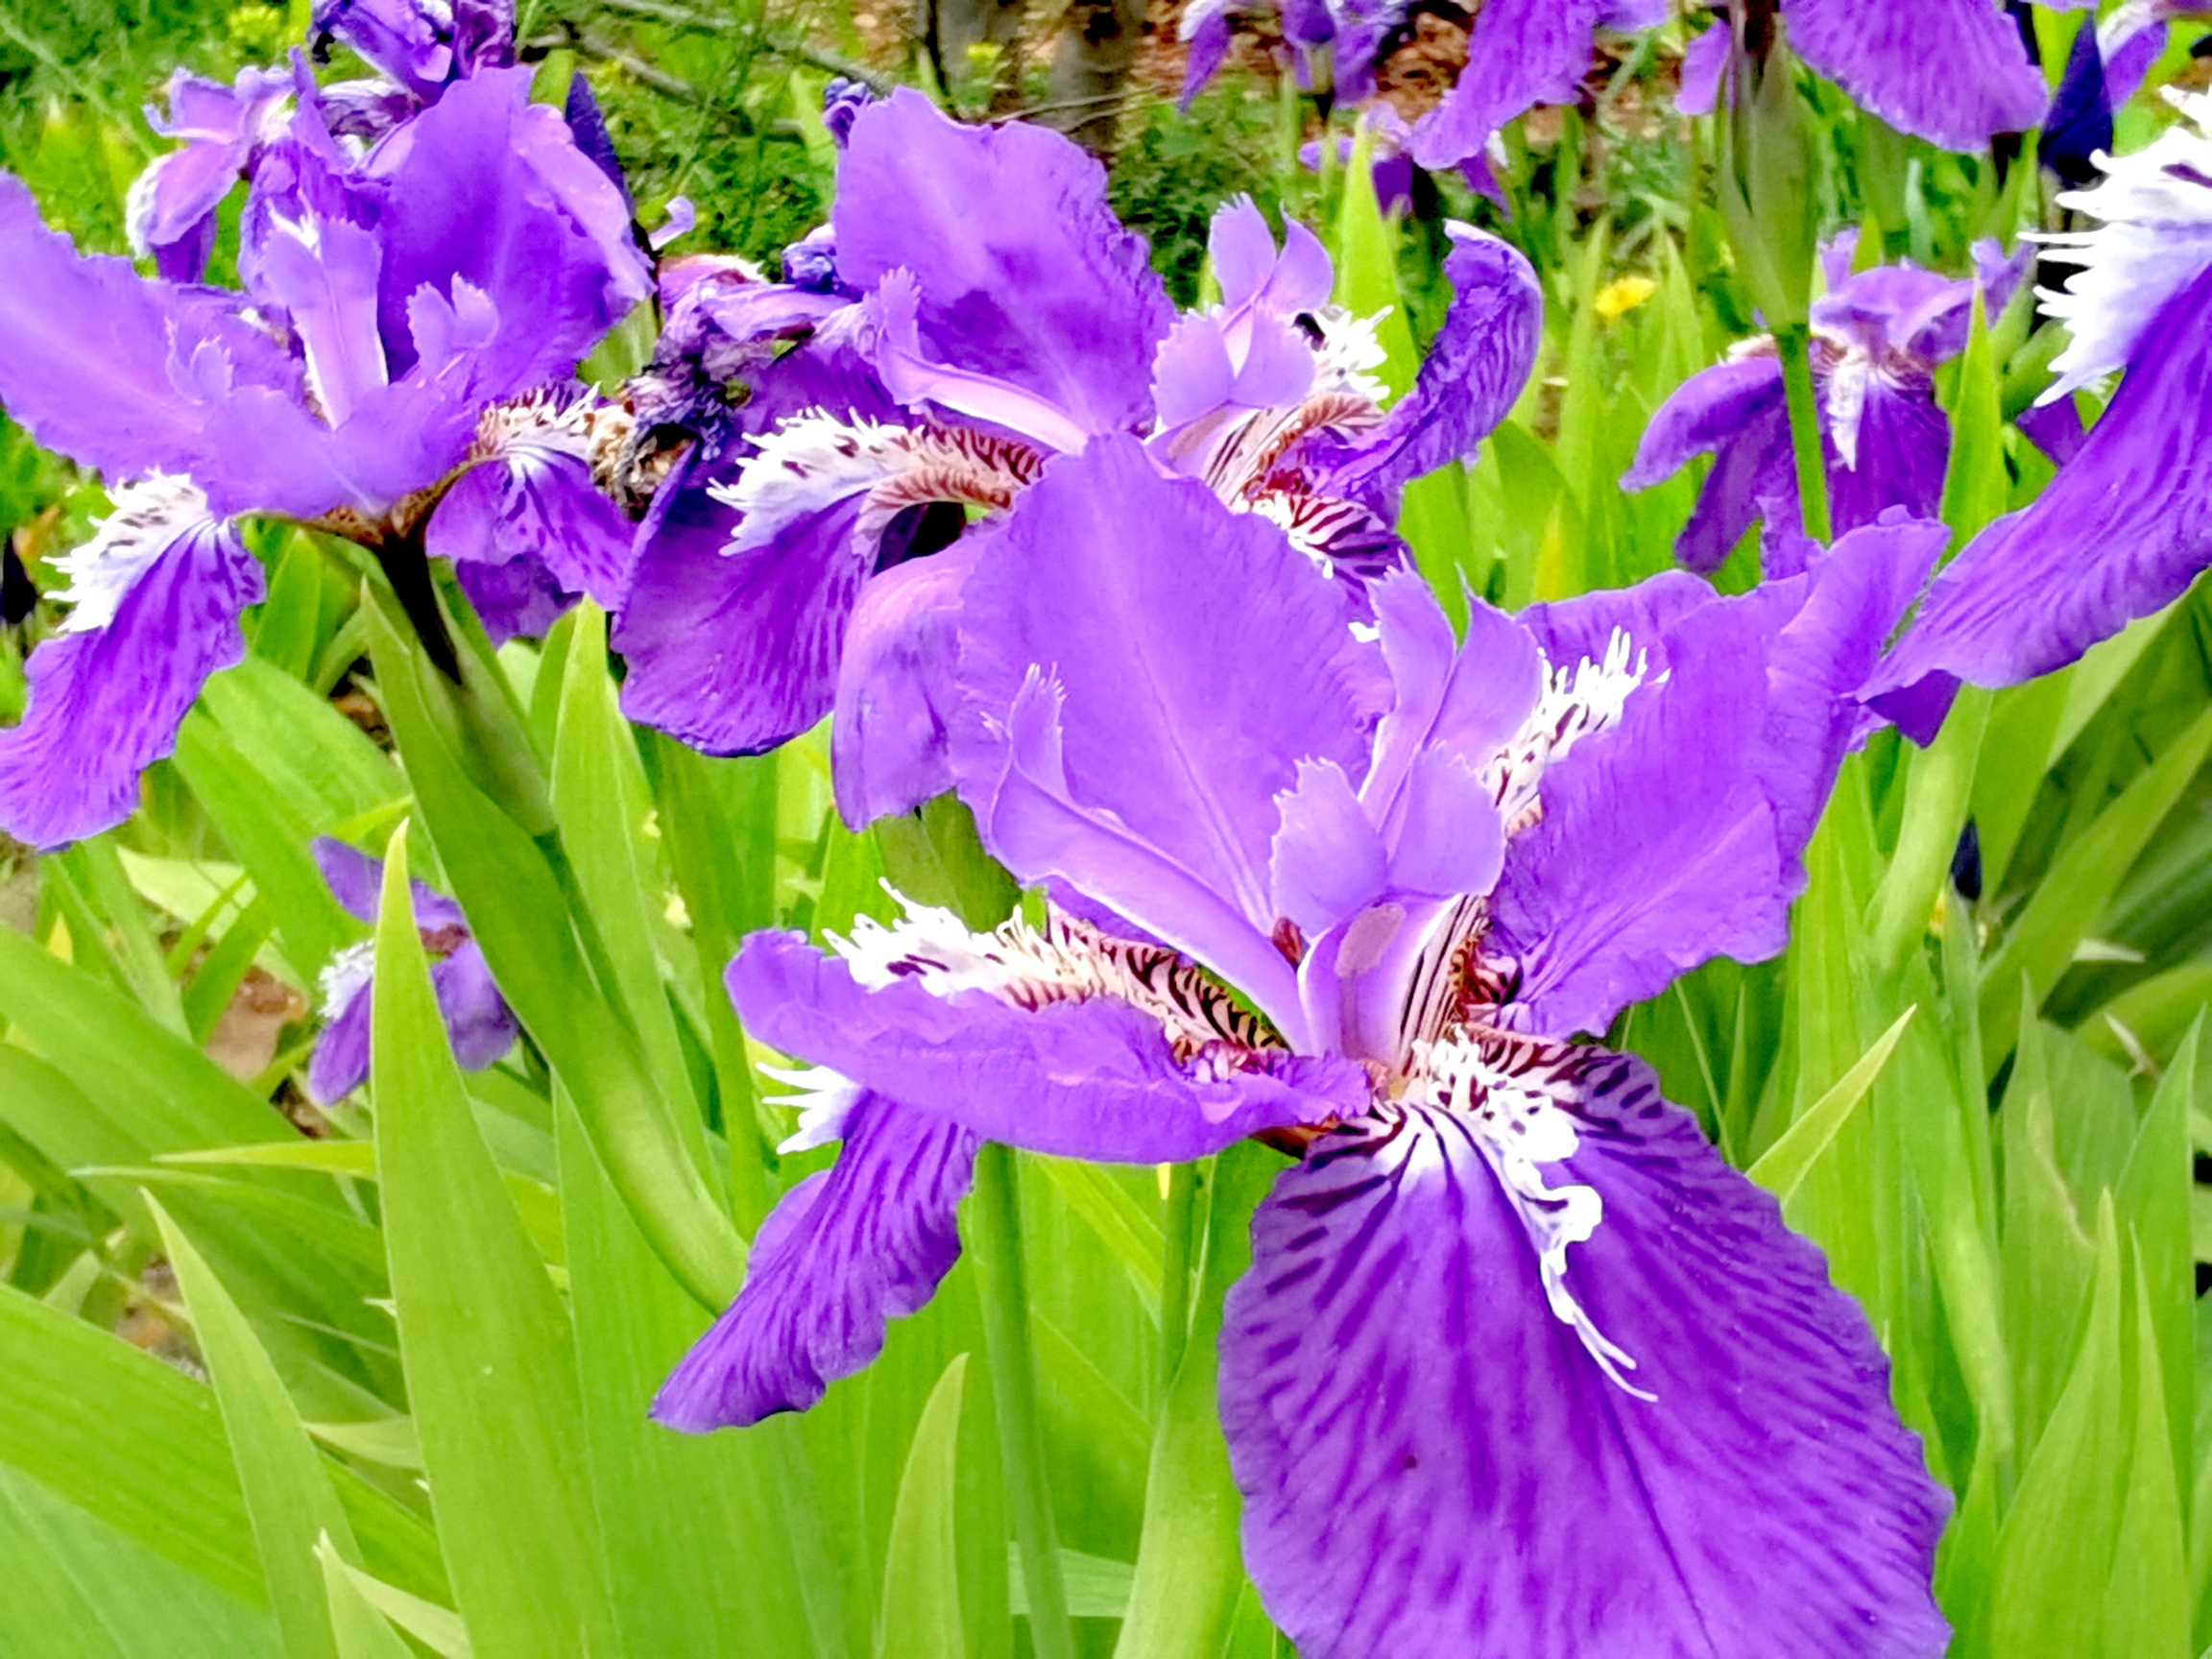 【首发】黄菖蒲和紫色的鸢尾花放一块,真是太养眼了!